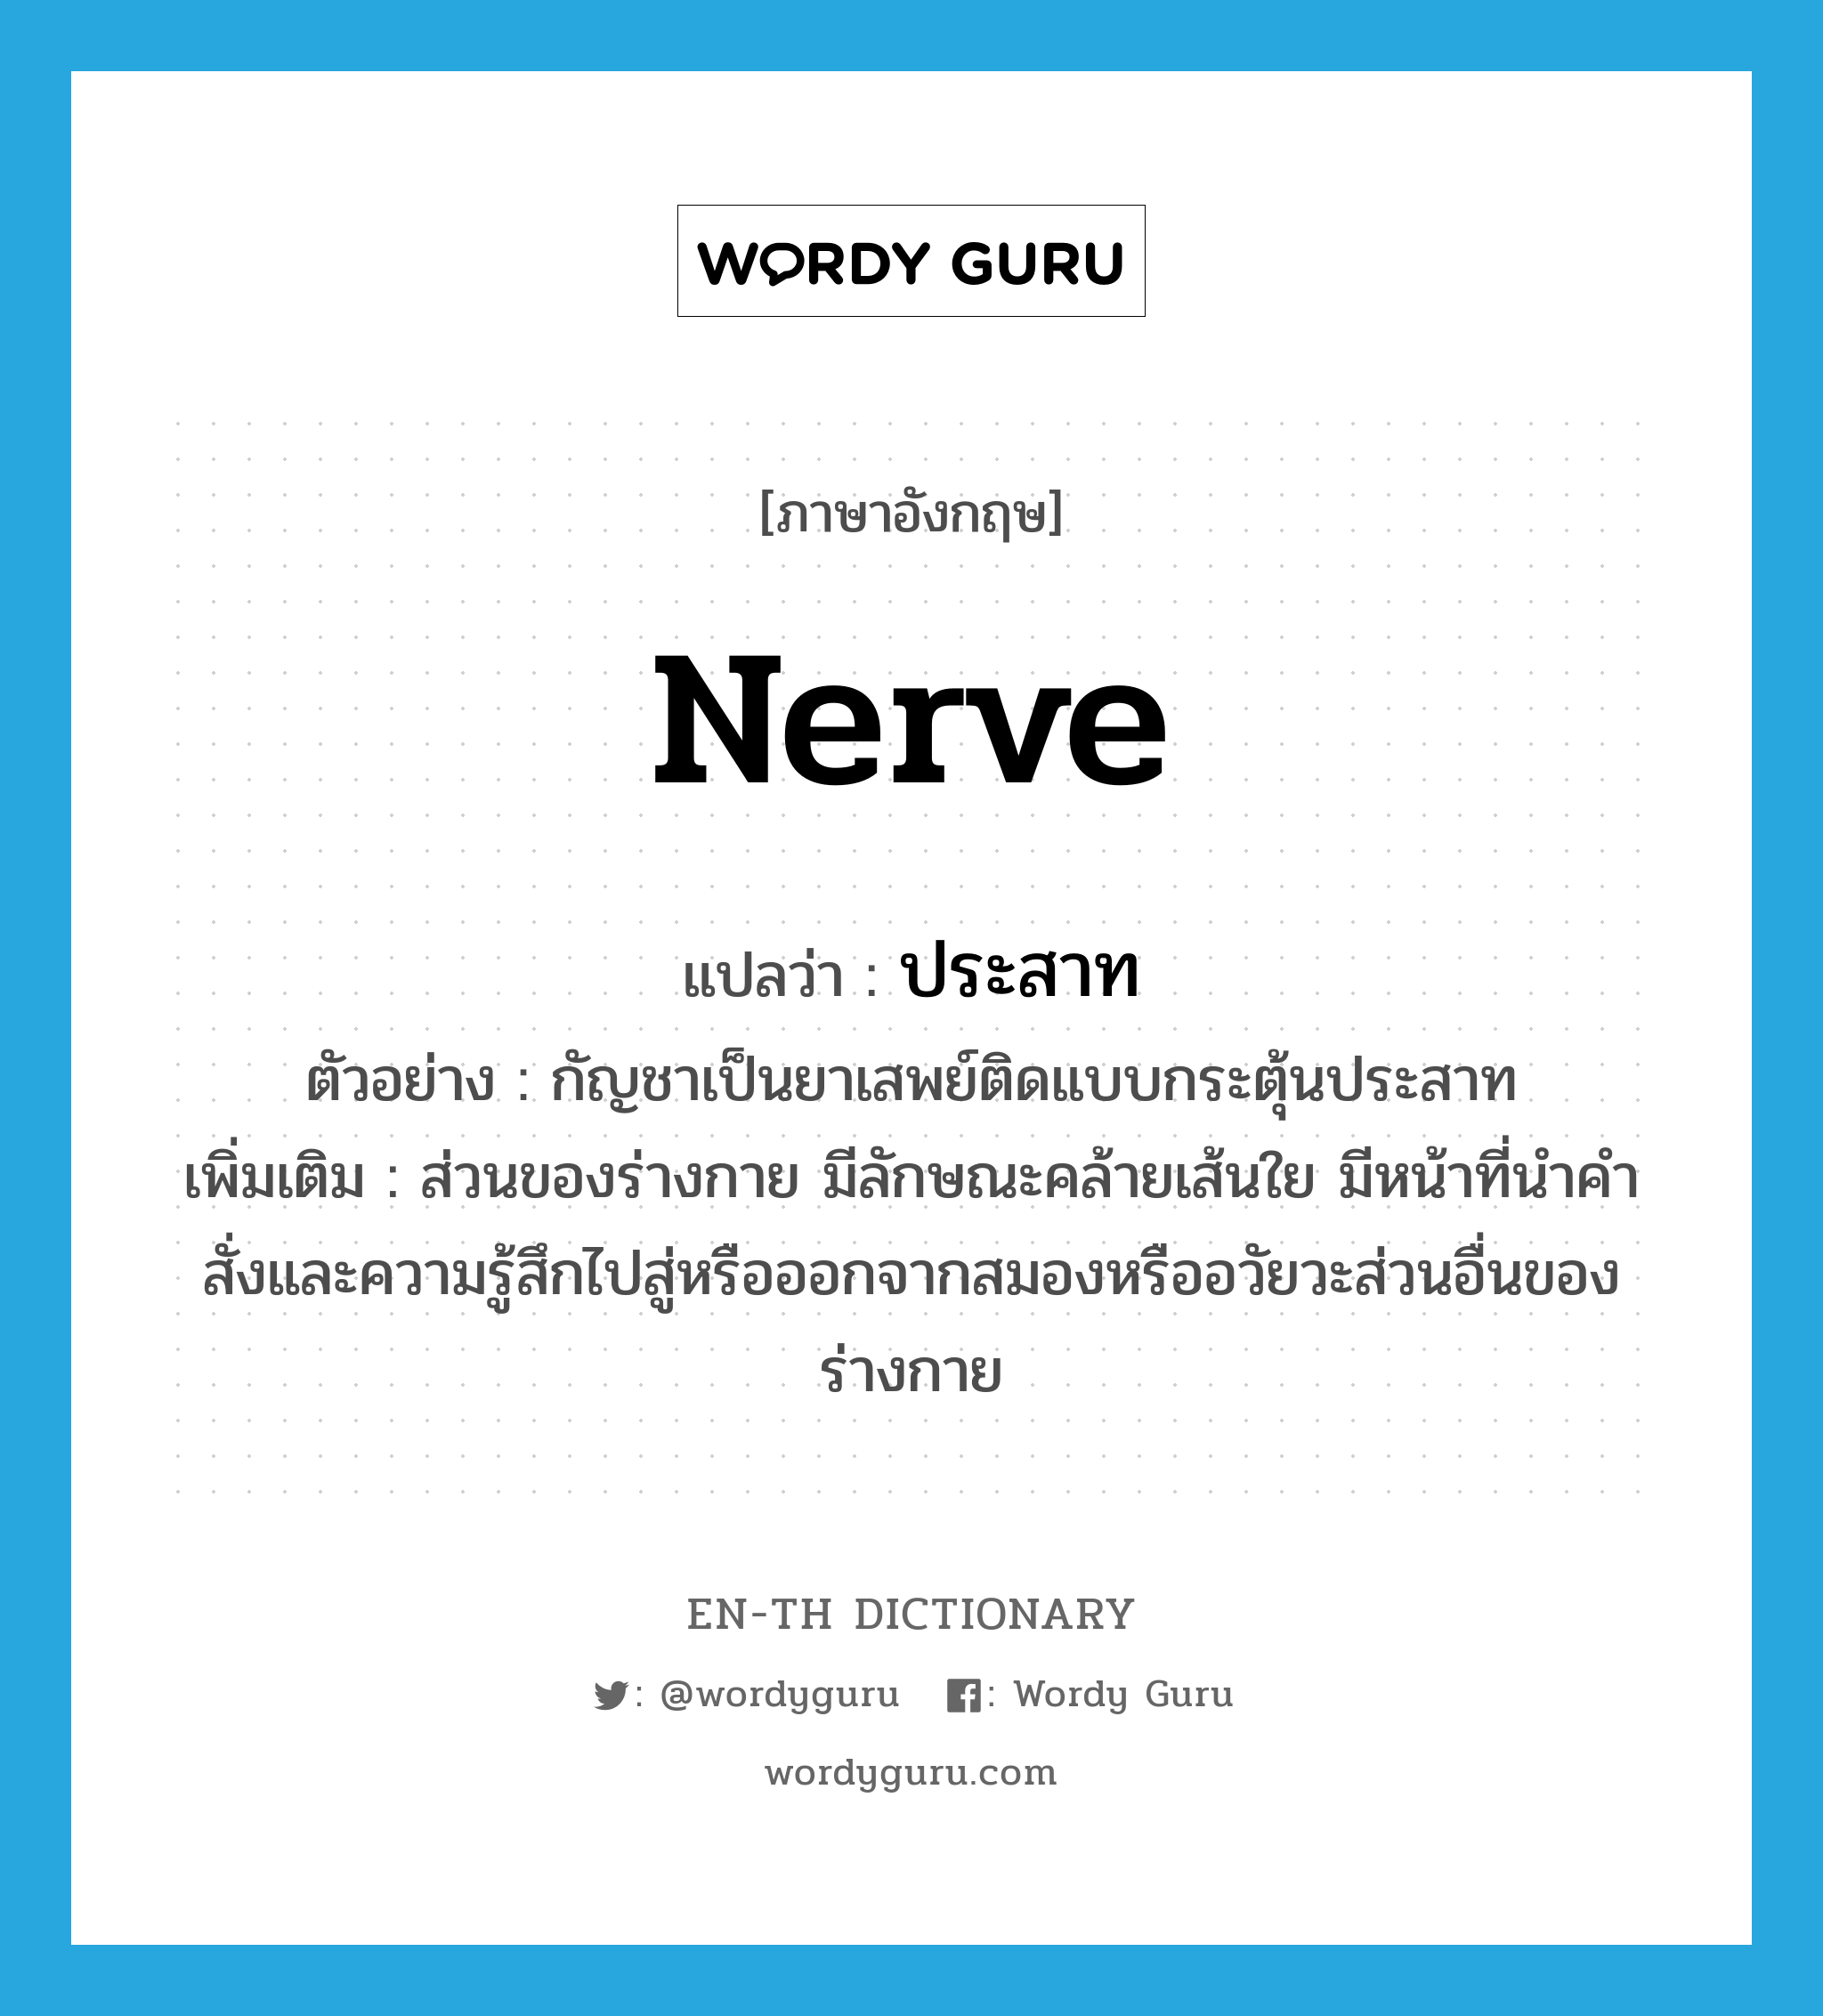 nerve แปลว่า?, คำศัพท์ภาษาอังกฤษ nerve แปลว่า ประสาท ประเภท N ตัวอย่าง กัญชาเป็นยาเสพย์ติดแบบกระตุ้นประสาท เพิ่มเติม ส่วนของร่างกาย มีลักษณะคล้ายเส้นใย มีหน้าที่นำคำสั่งและความรู้สึกไปสู่หรือออกจากสมองหรืออวัยวะส่วนอื่นของร่างกาย หมวด N